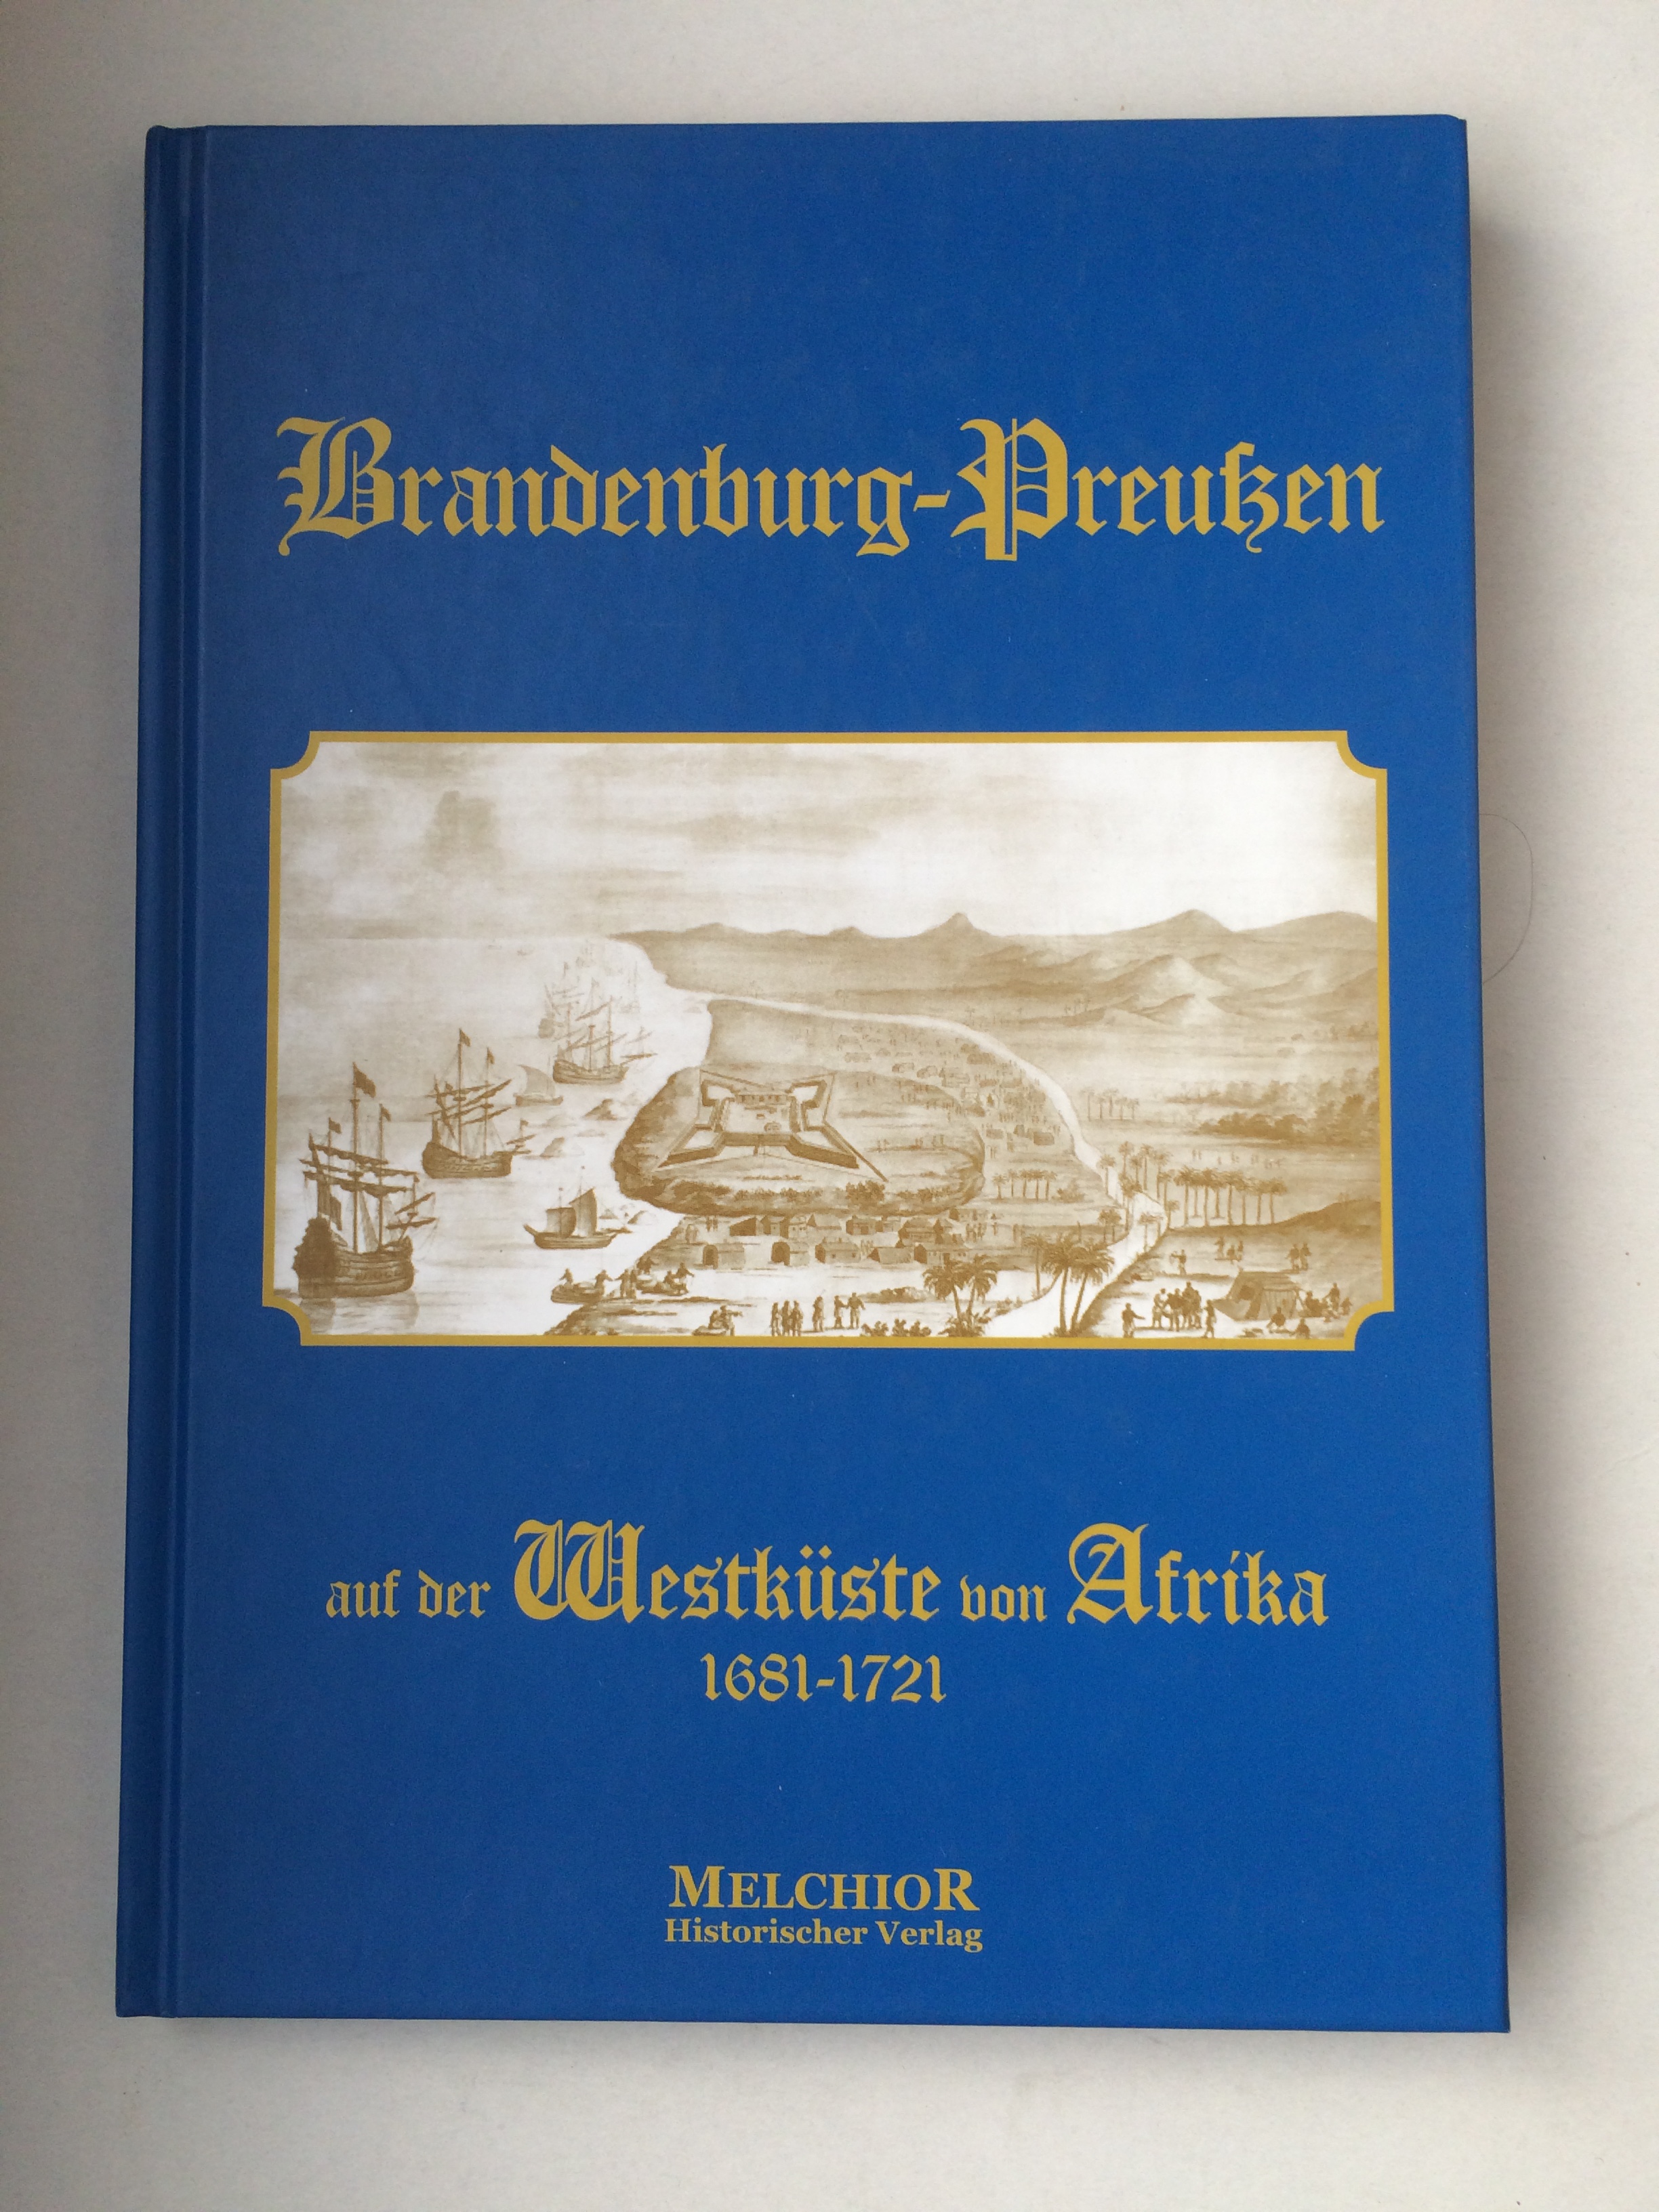 Brandenburg-Preußen auf der Westküste von Afrika 1681-1721 - Großer Generalstab Abteilung für Kriegsgeschichte